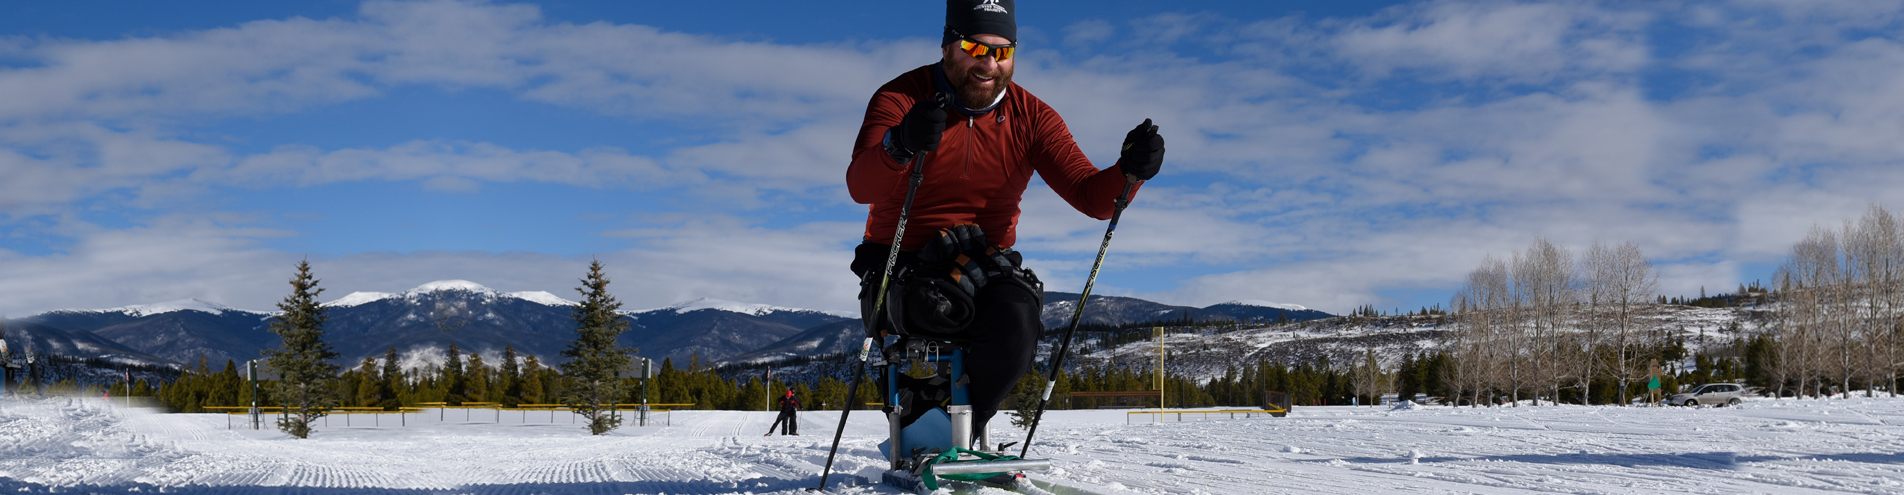 Athlete on mono-ski skiing